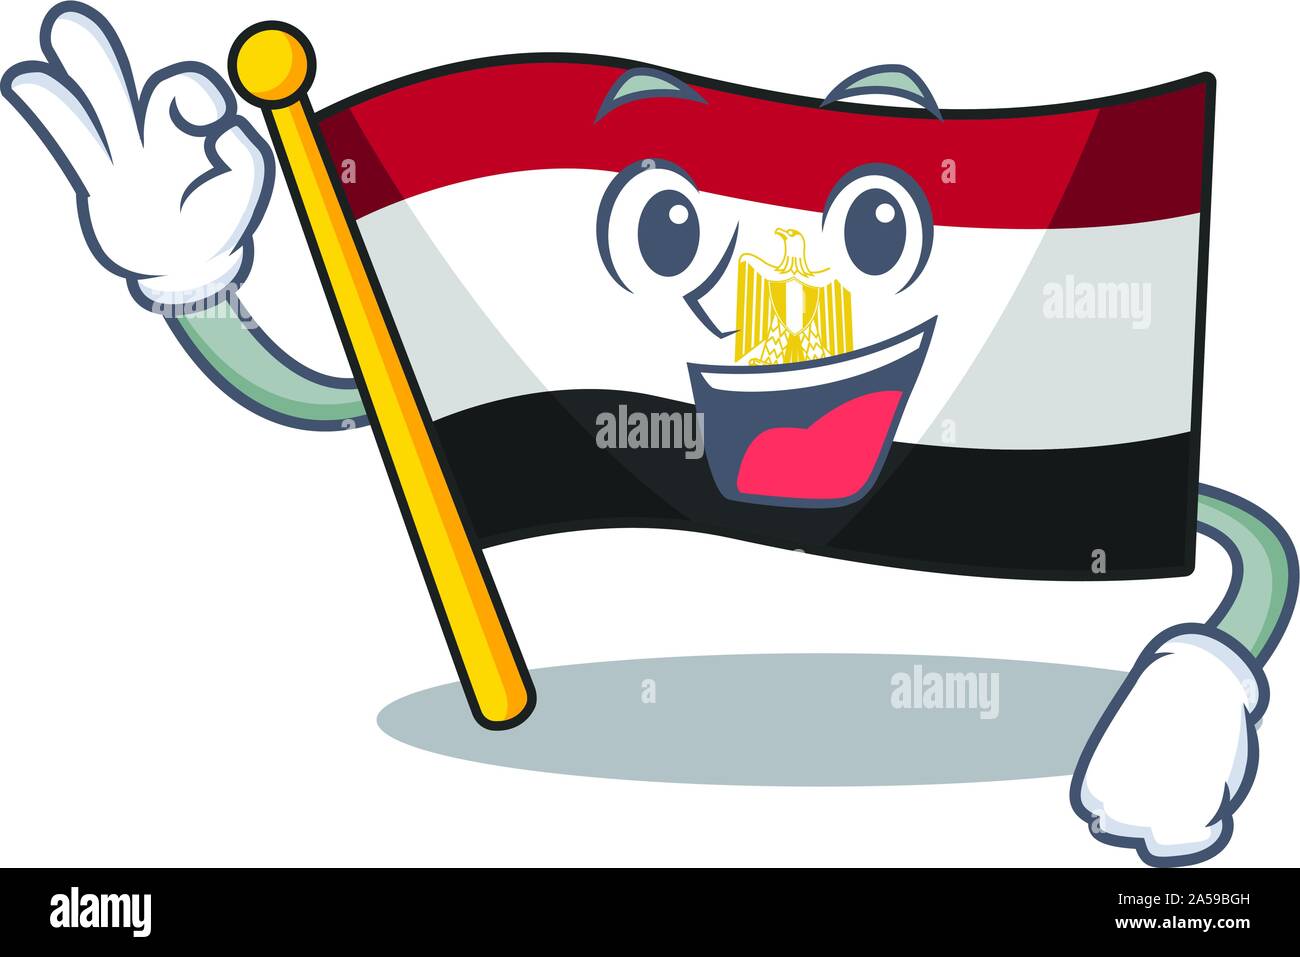 Okay flag egyptian flown on cartoon pole Stock Vector